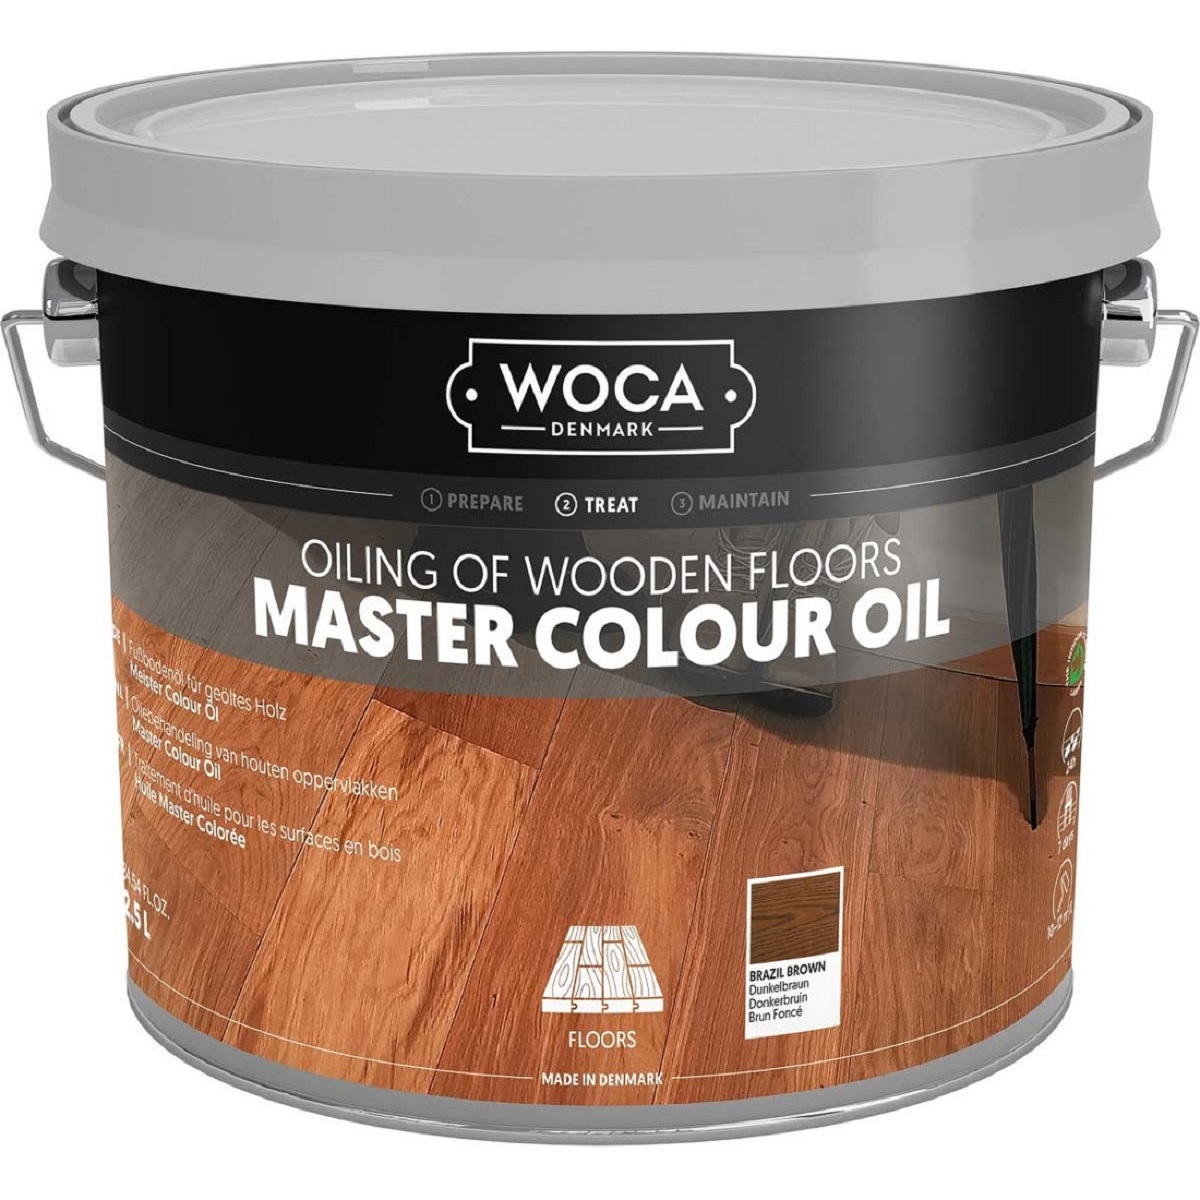 WOCA Parkett-Colouröl Dunkelbraun N102 Master Colour Oil Brazil Brown 2,5 Liter